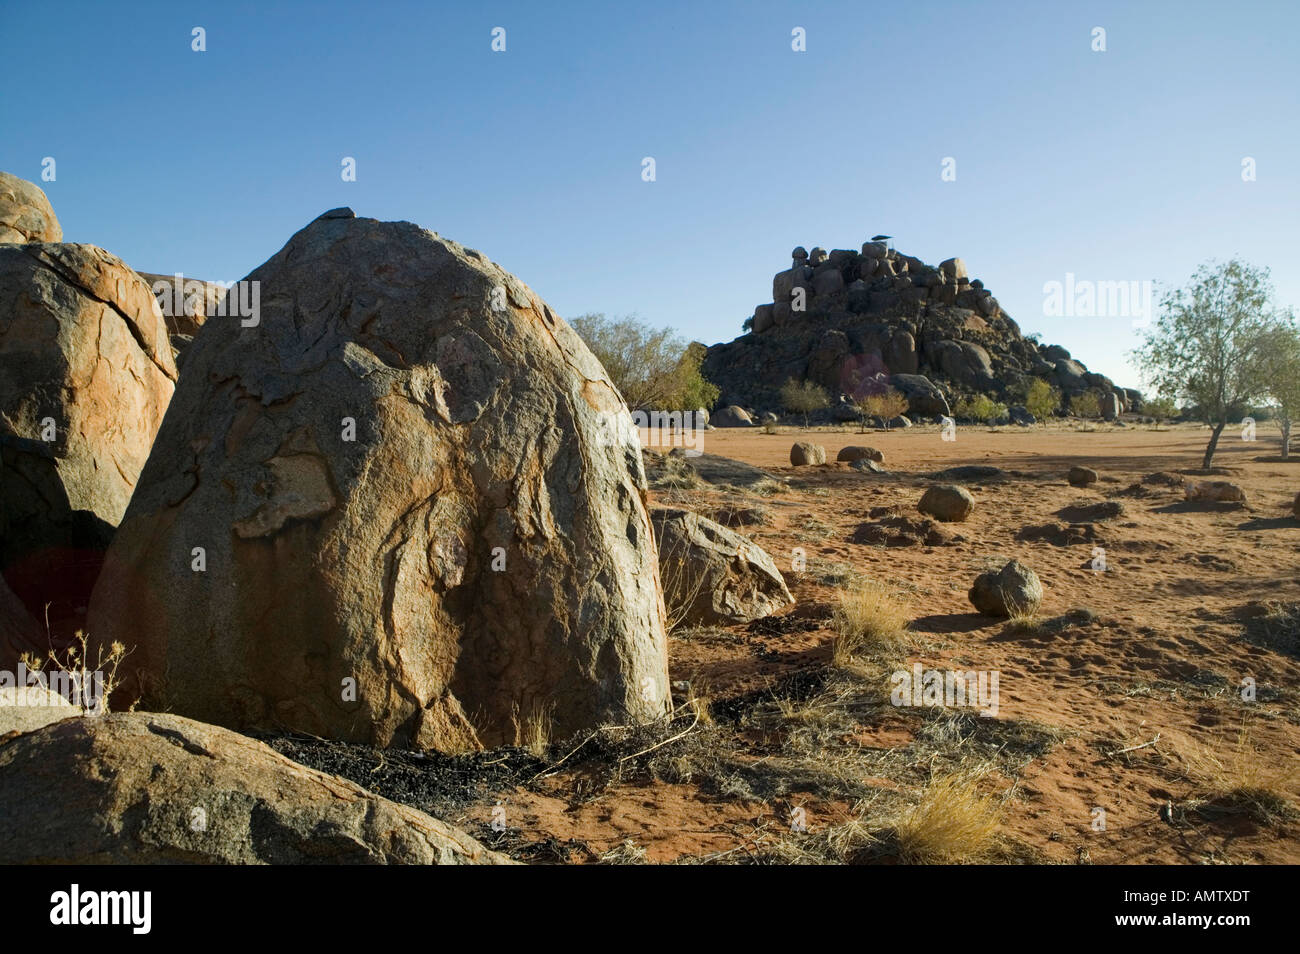 Rock, rochers, Boulder, roches, géologie, géomorphologie, altération, bizarre, bizarre, Namib, Afrique, impair, Oddity, bizarreries, sauf Banque D'Images